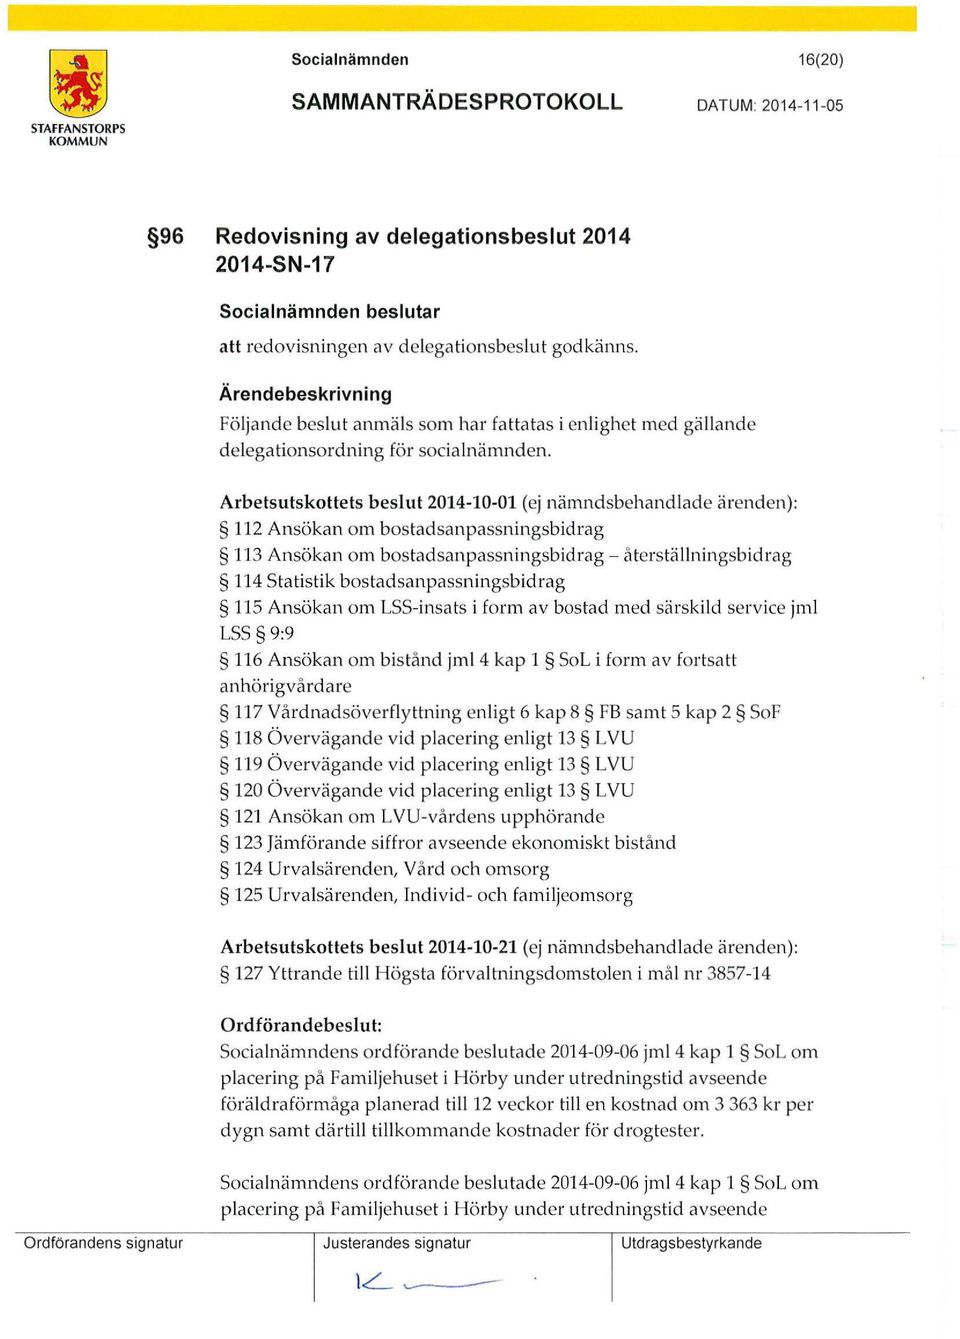 Arbetsutskottets beslut 2014-10-01 (ej nämndsbehandlade ärenden): 112 Ansökan om bostadsanpassningsbidrag 113 Ansökan om bostadsanpassningsbidrag - återställningsbidrag 114 statistik